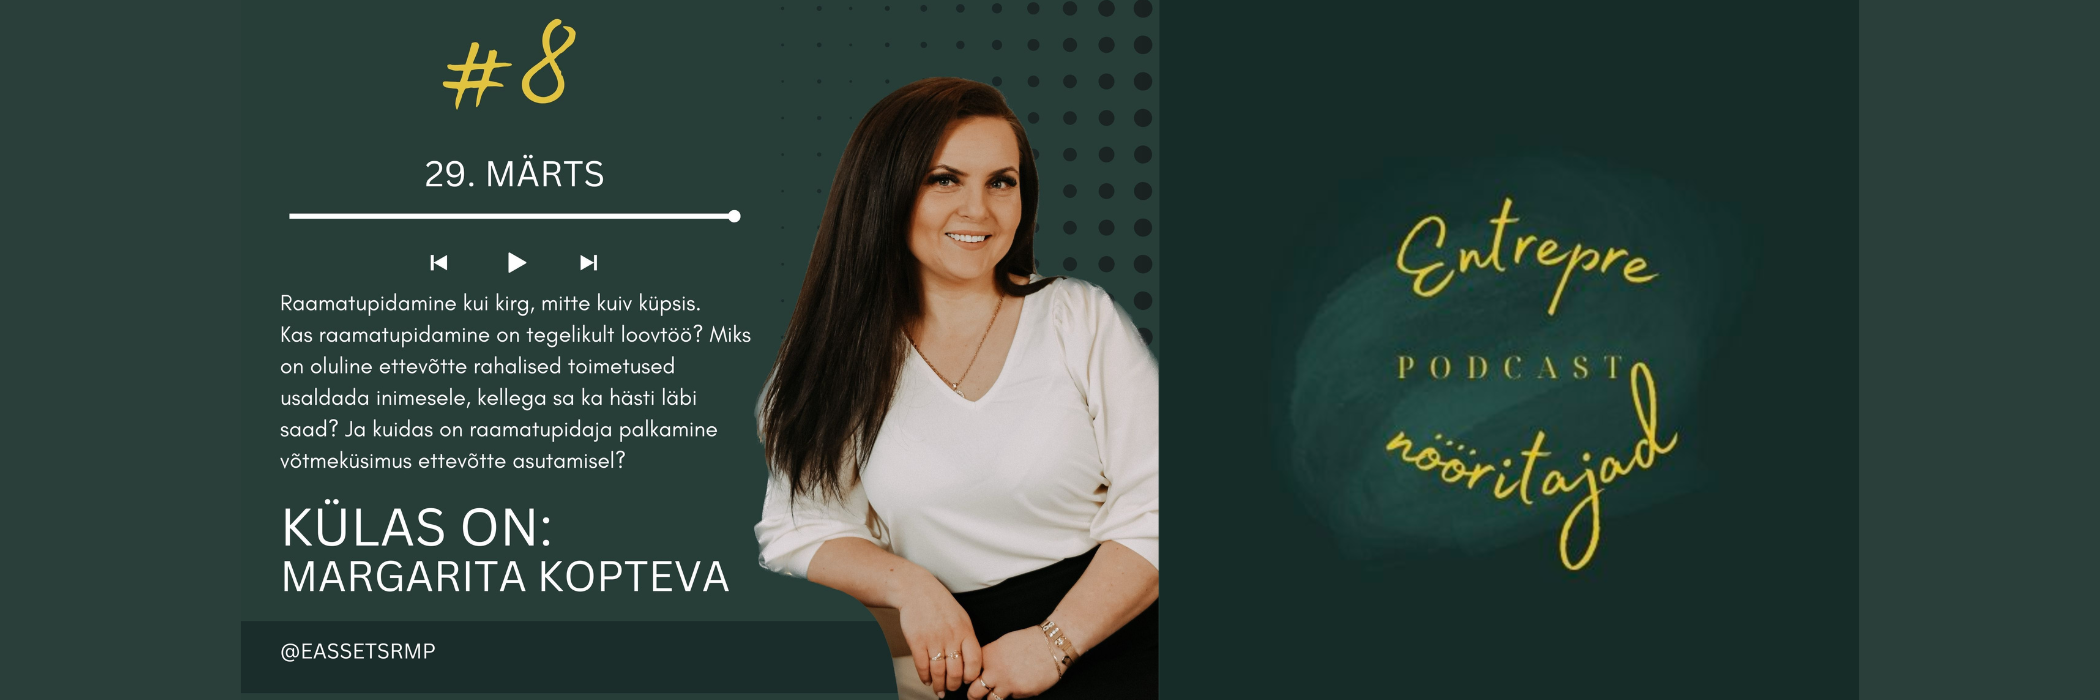 Margarita Kopteva X E-Assets raamatupidamine podcastis Entreprenööritajad